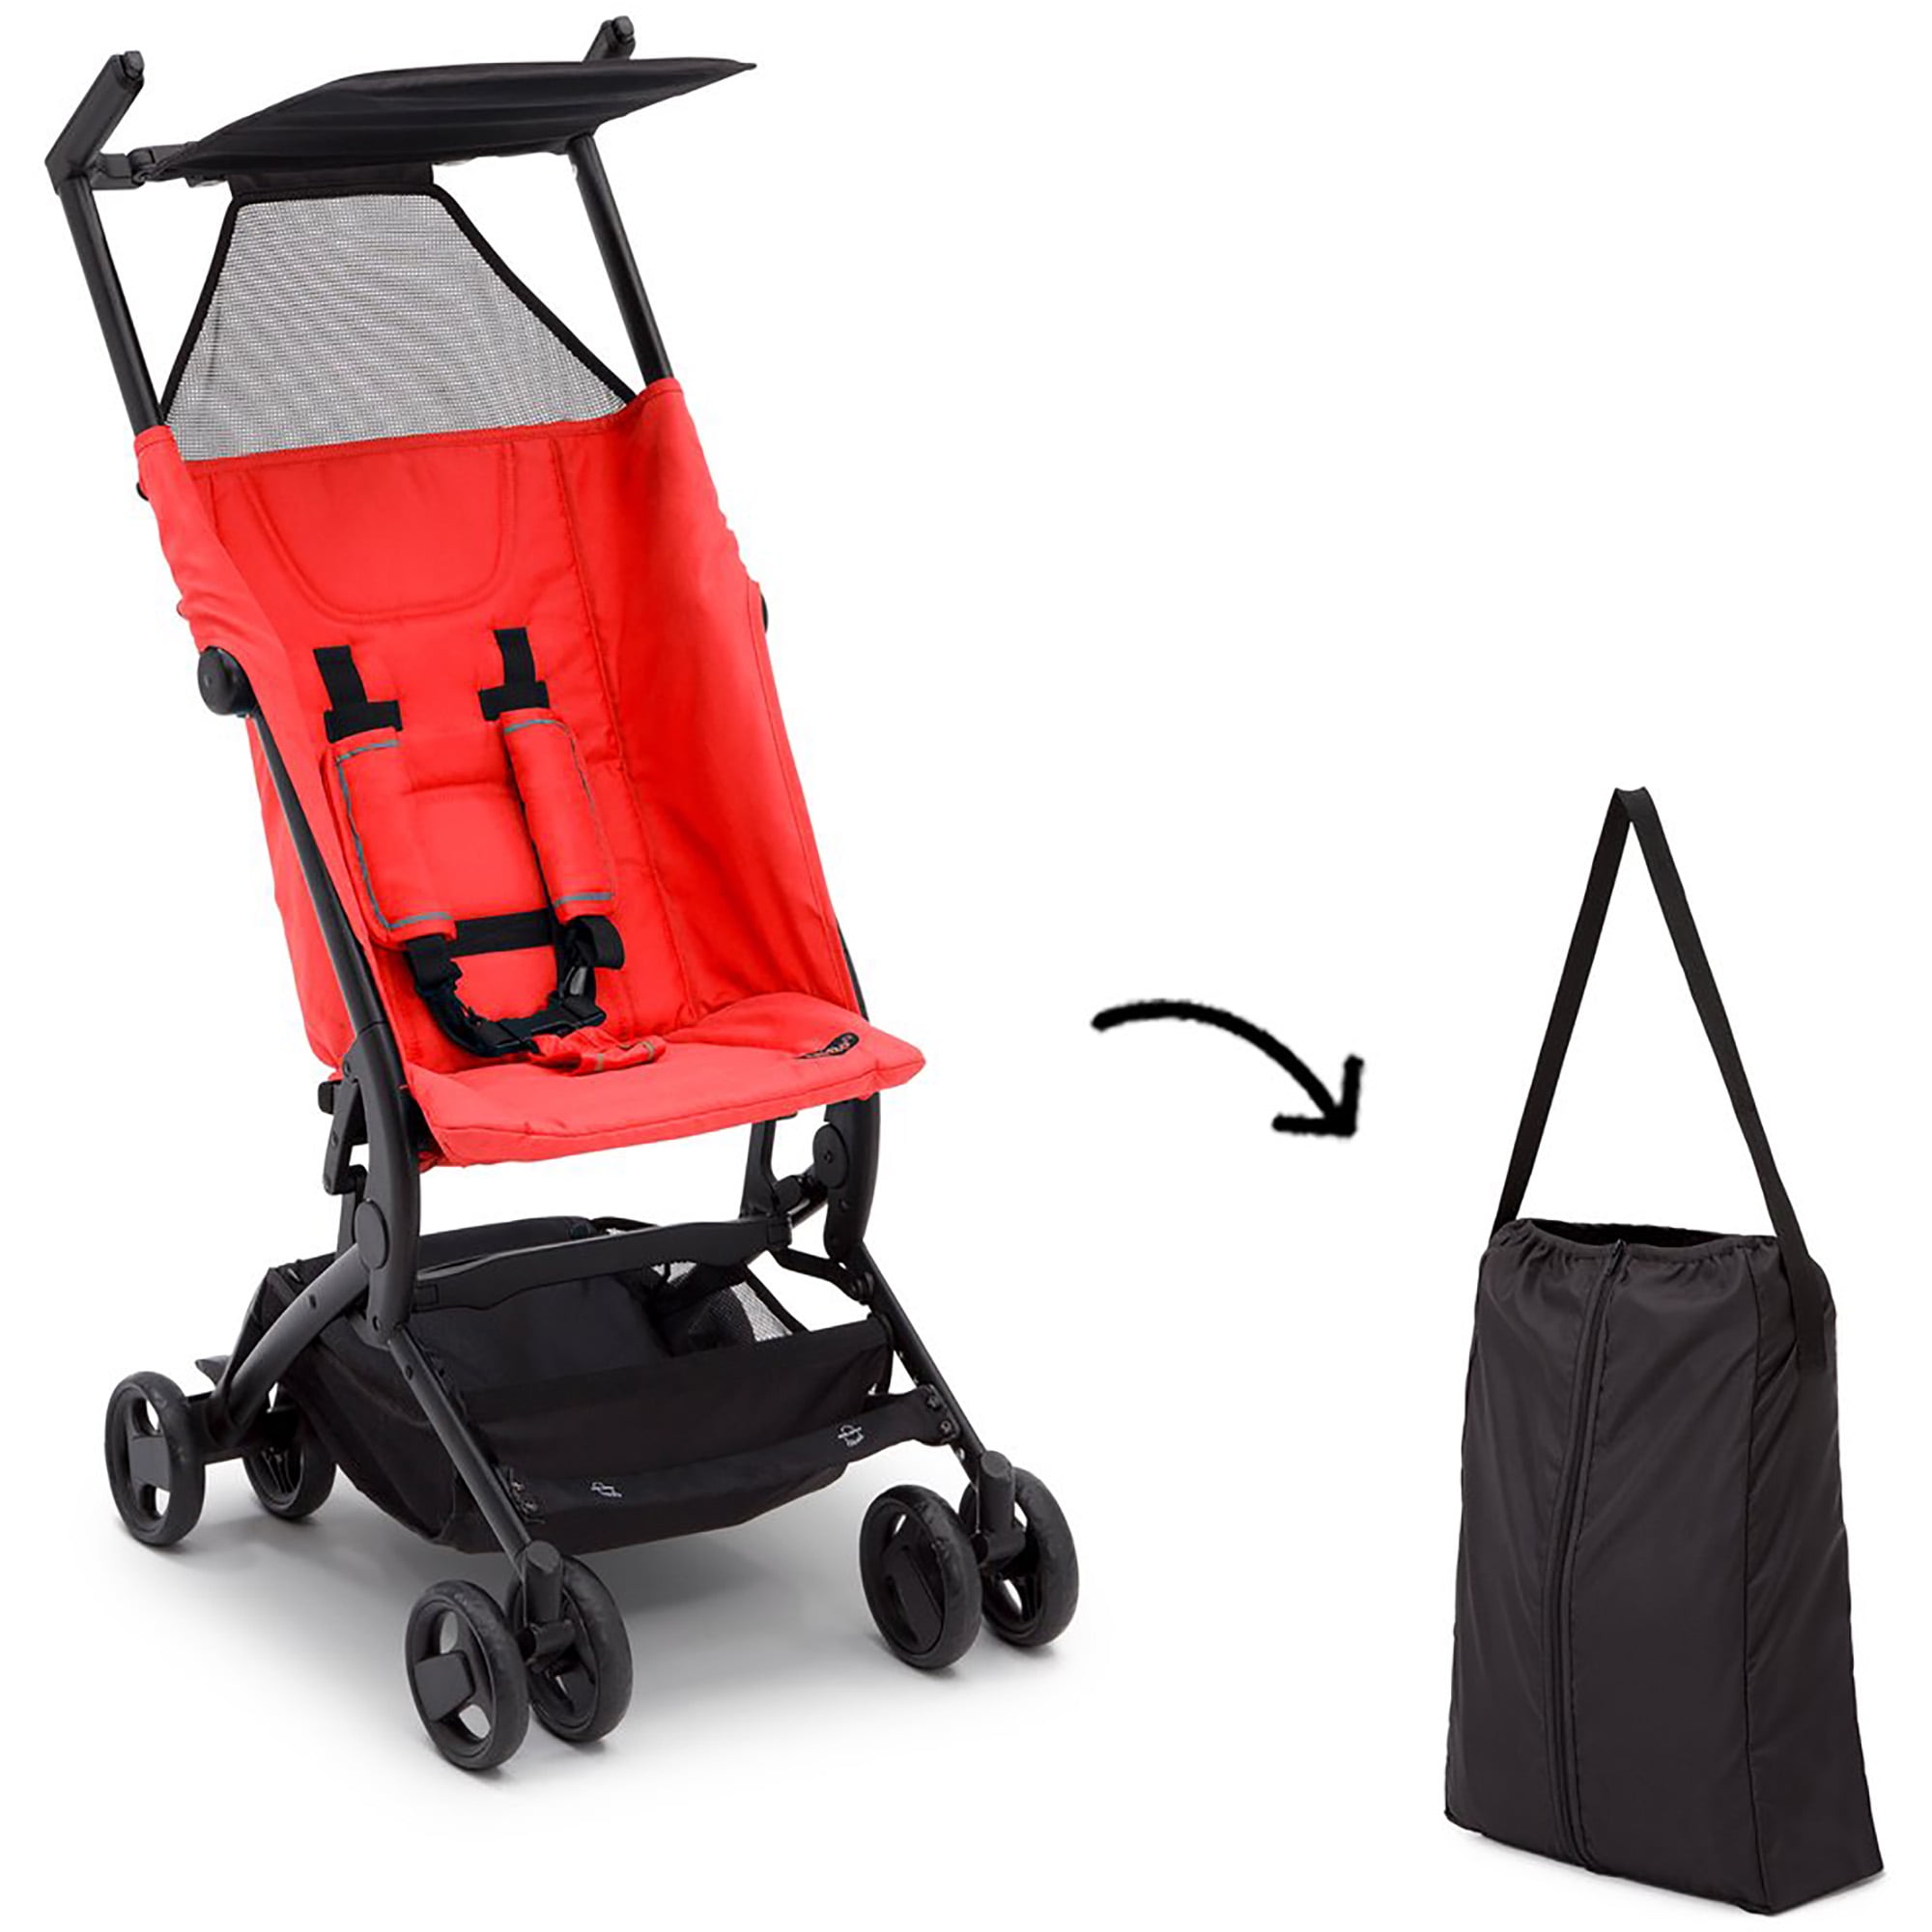 clutch stroller by delta children